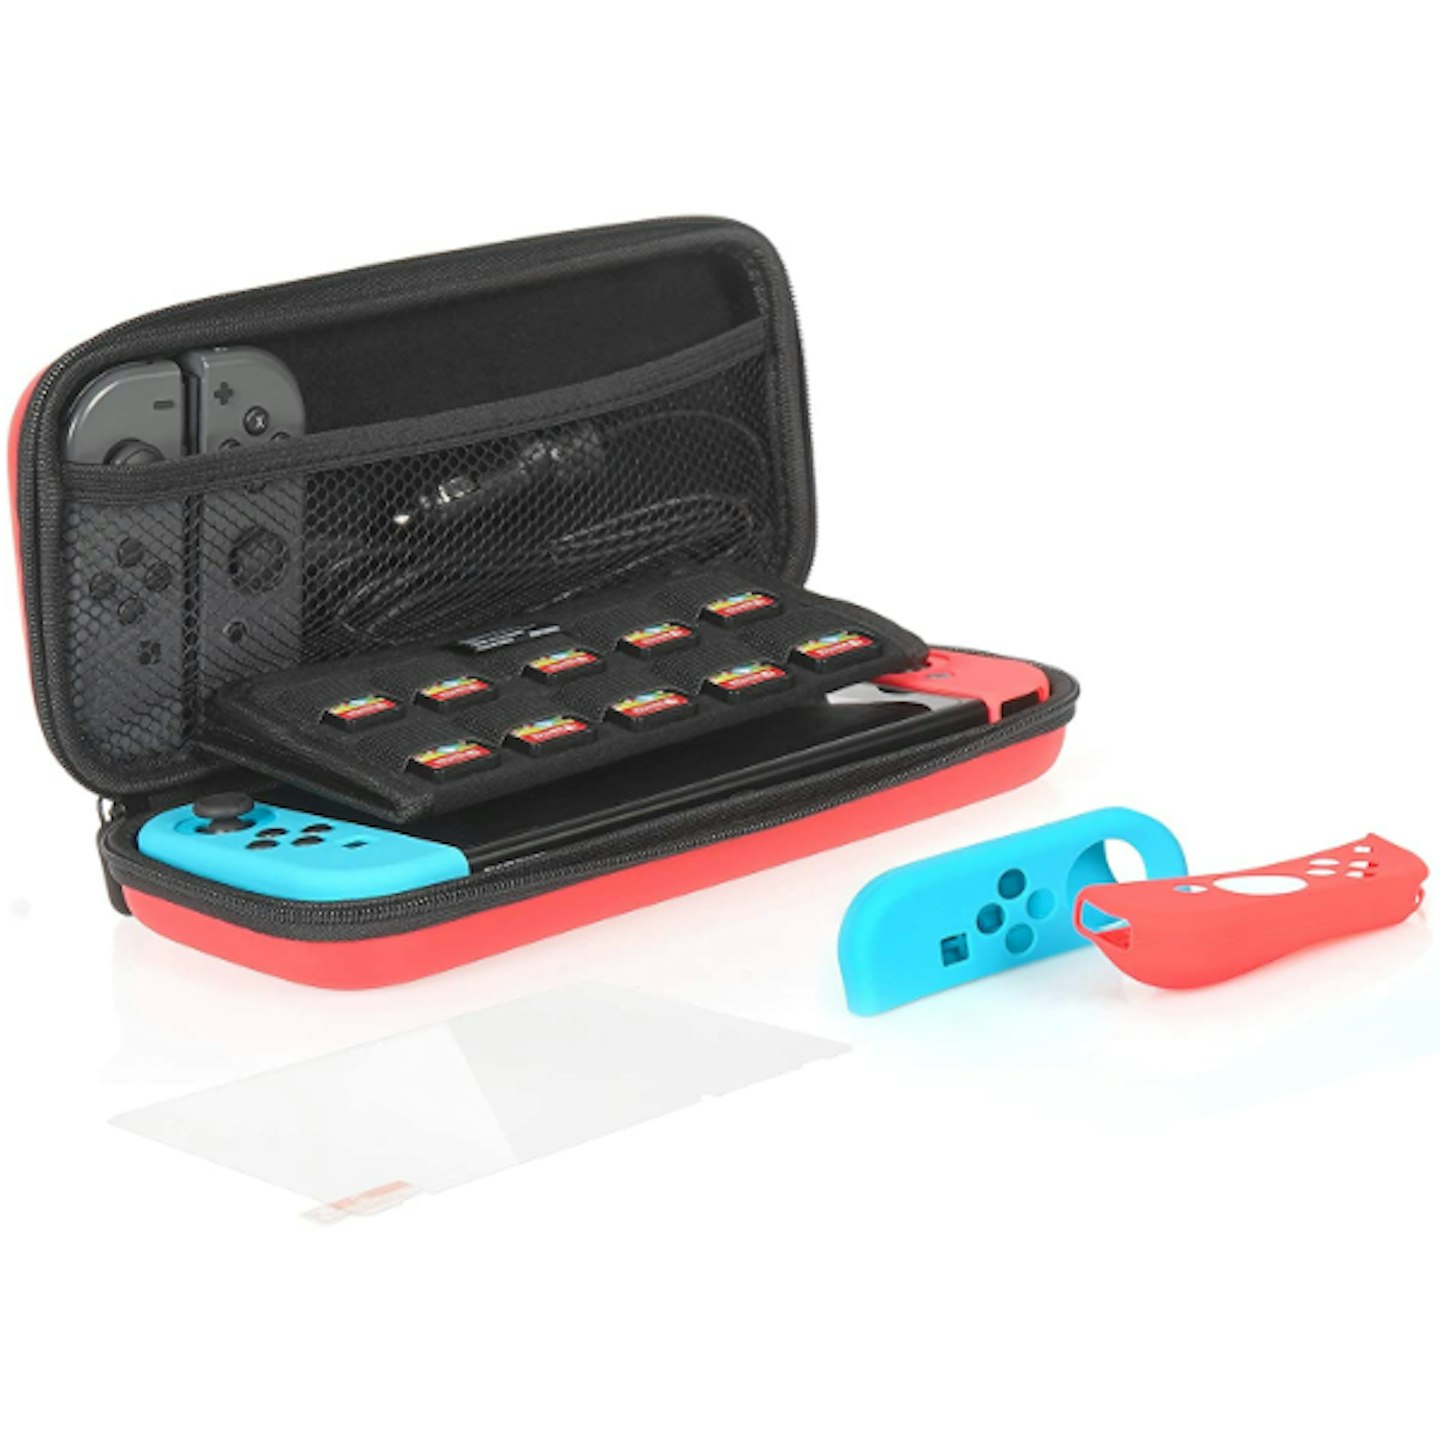 AmazonBasics Protection Kit For Nintendo Switch